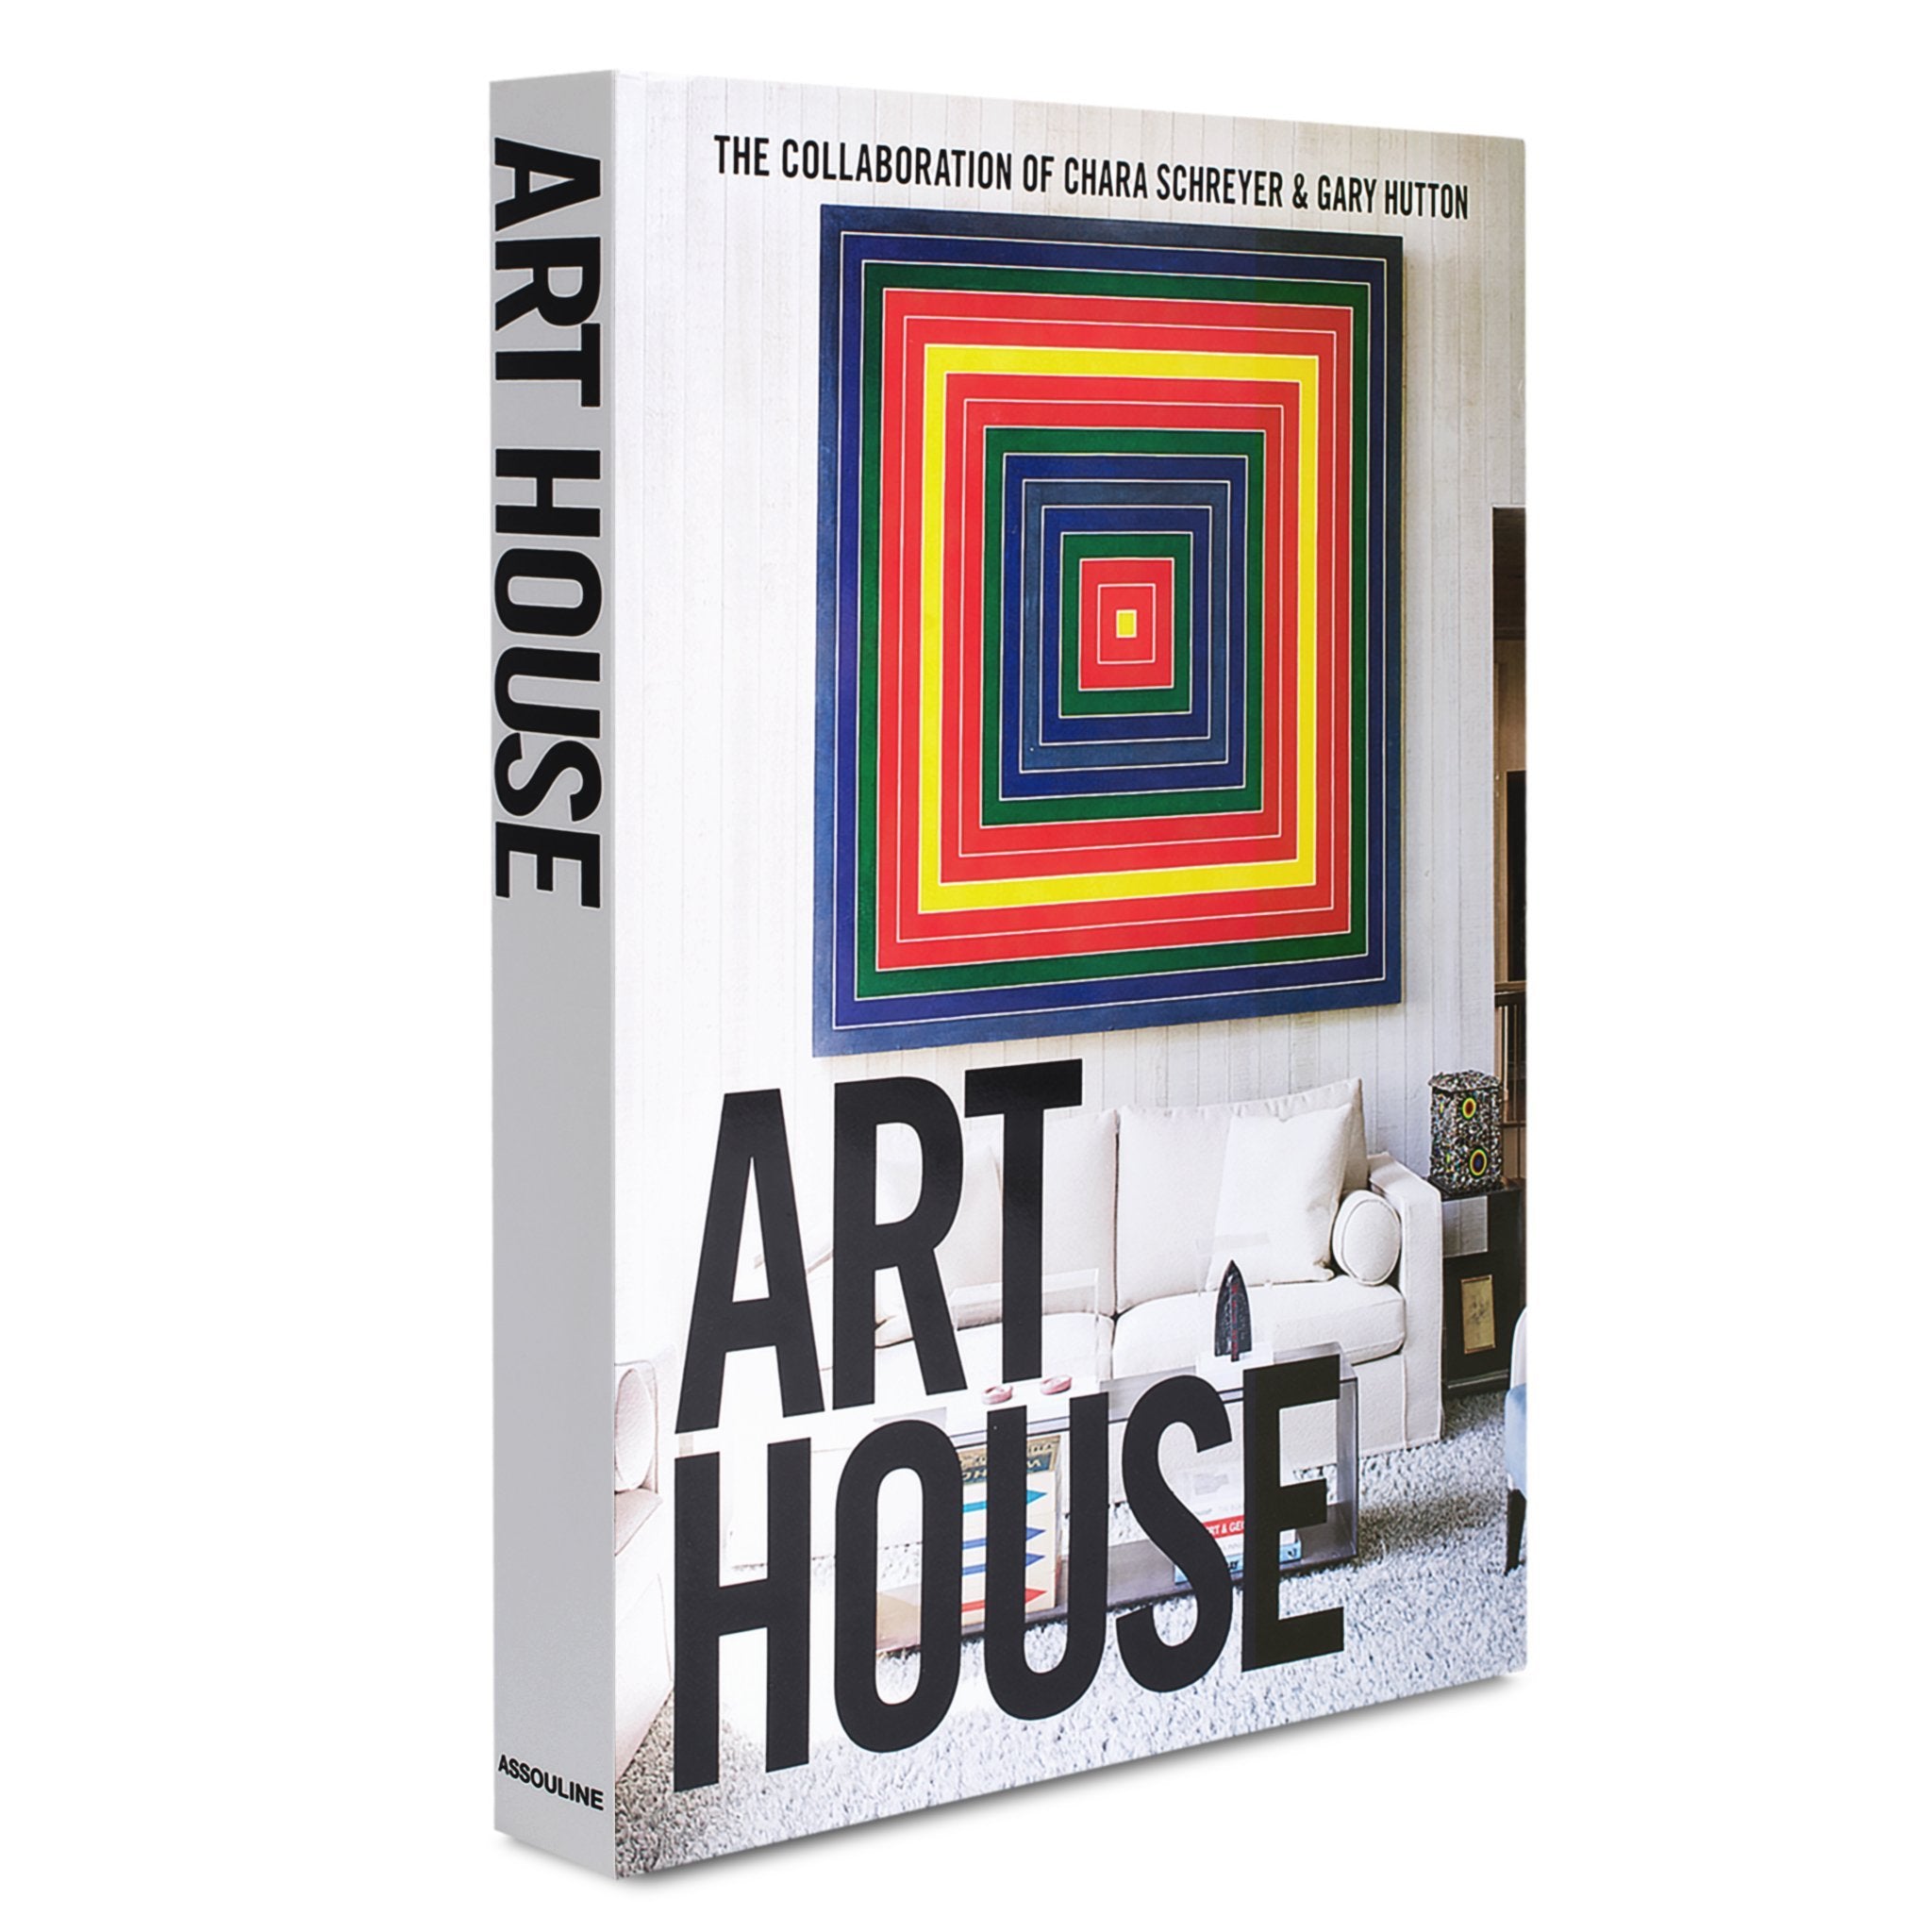 Art House Book Chara Schreyer & Gary Hutton